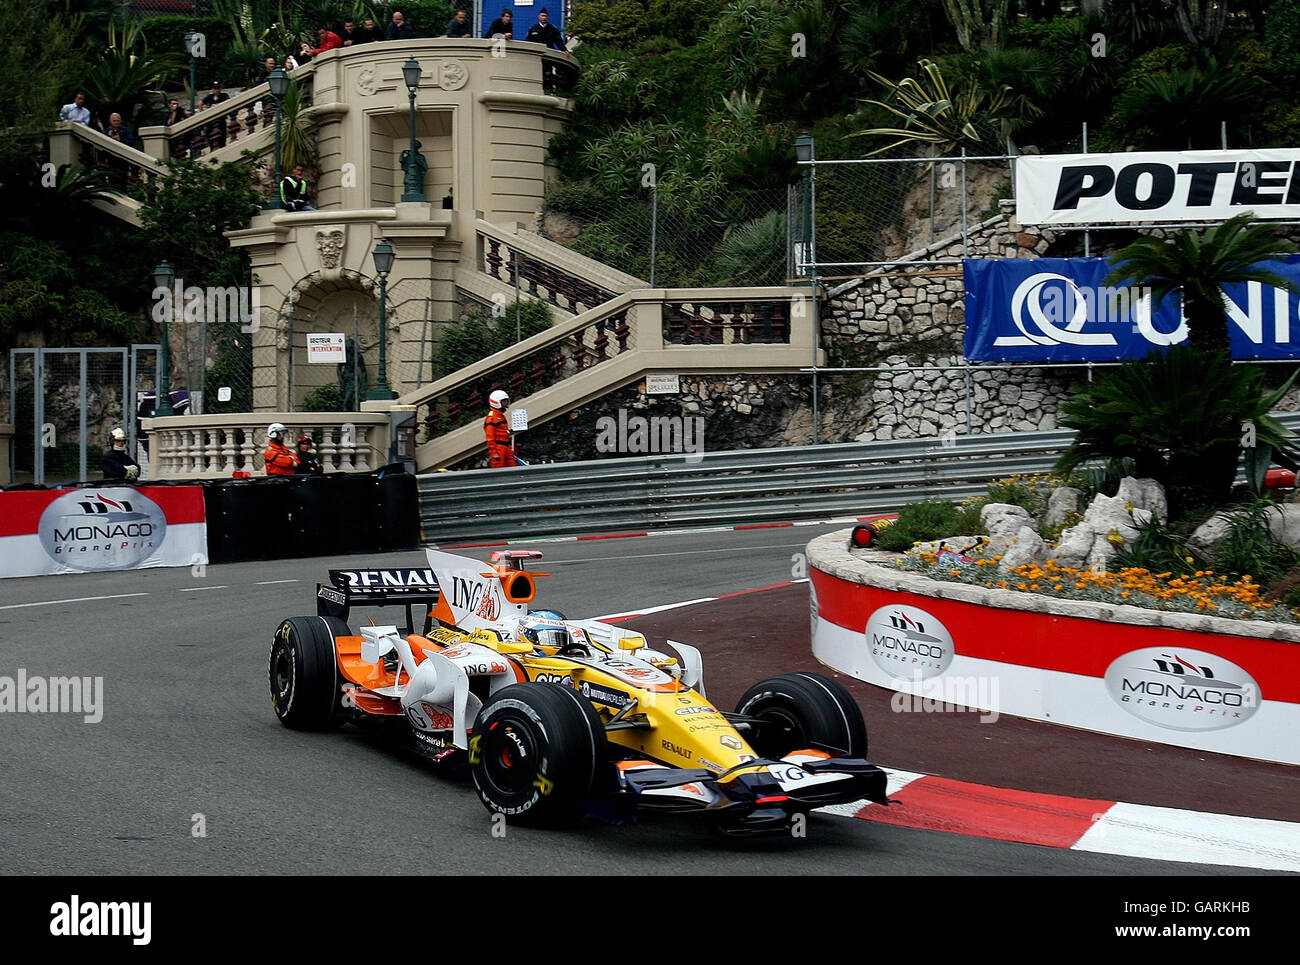 Carreras de Fórmula Uno - Gran Premio de Mónaco - Calificación - Monte Carlo.  Fernando Alonso en Renault redondea el peinado Lowes durante la  clasificación en Monte Carlo, Mónaco Fotografía de stock - Alamy